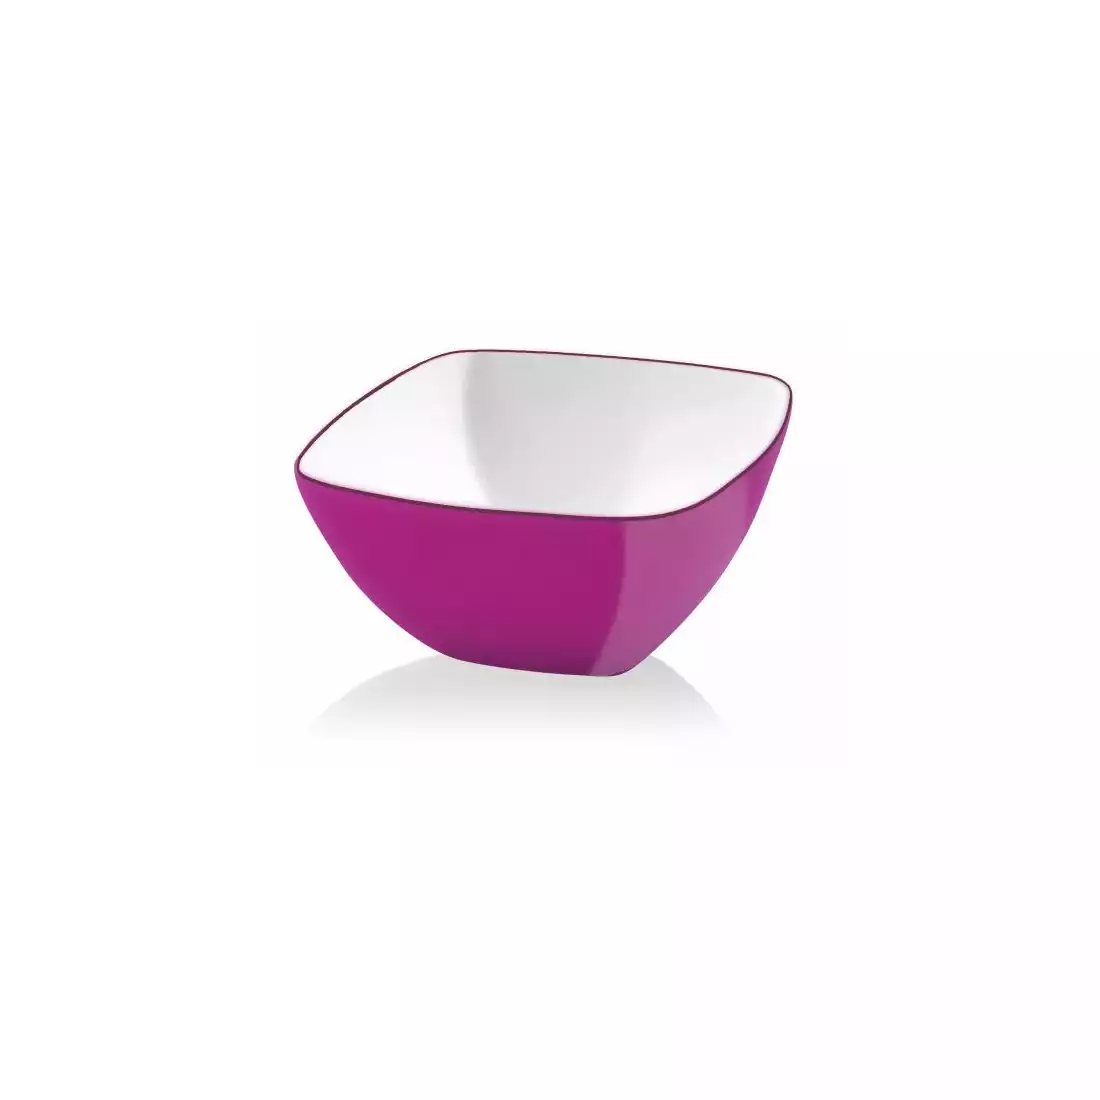 VIALLI DESIGN LIVIO square acrylic bowl, fuchsia